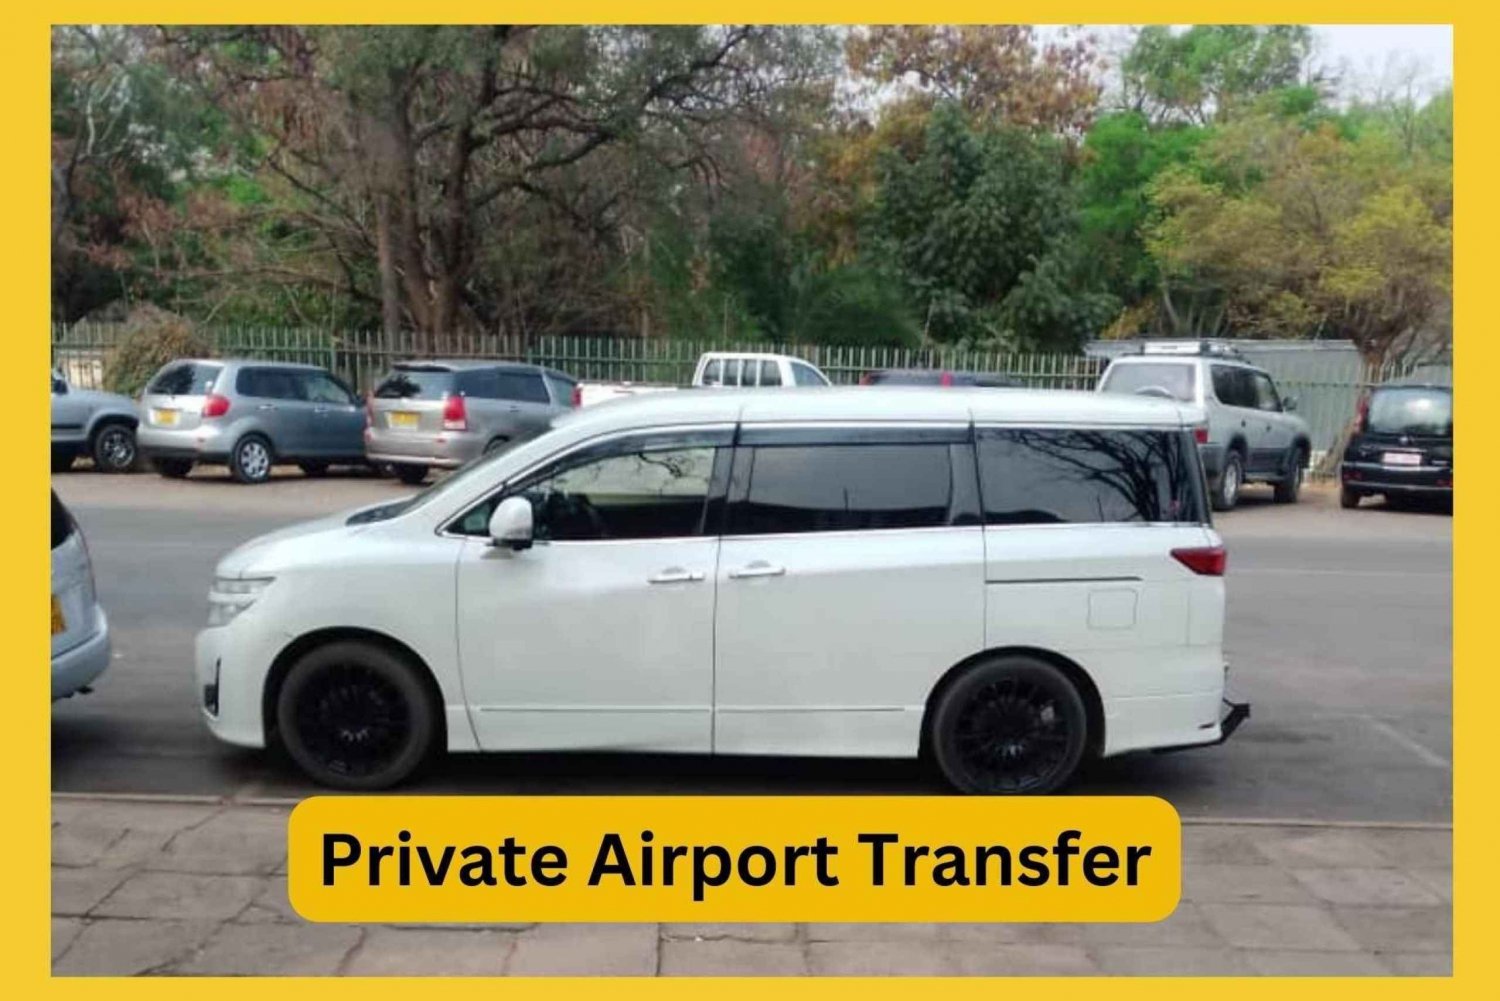 Private Airport Safari Transfer in Minivan with AC